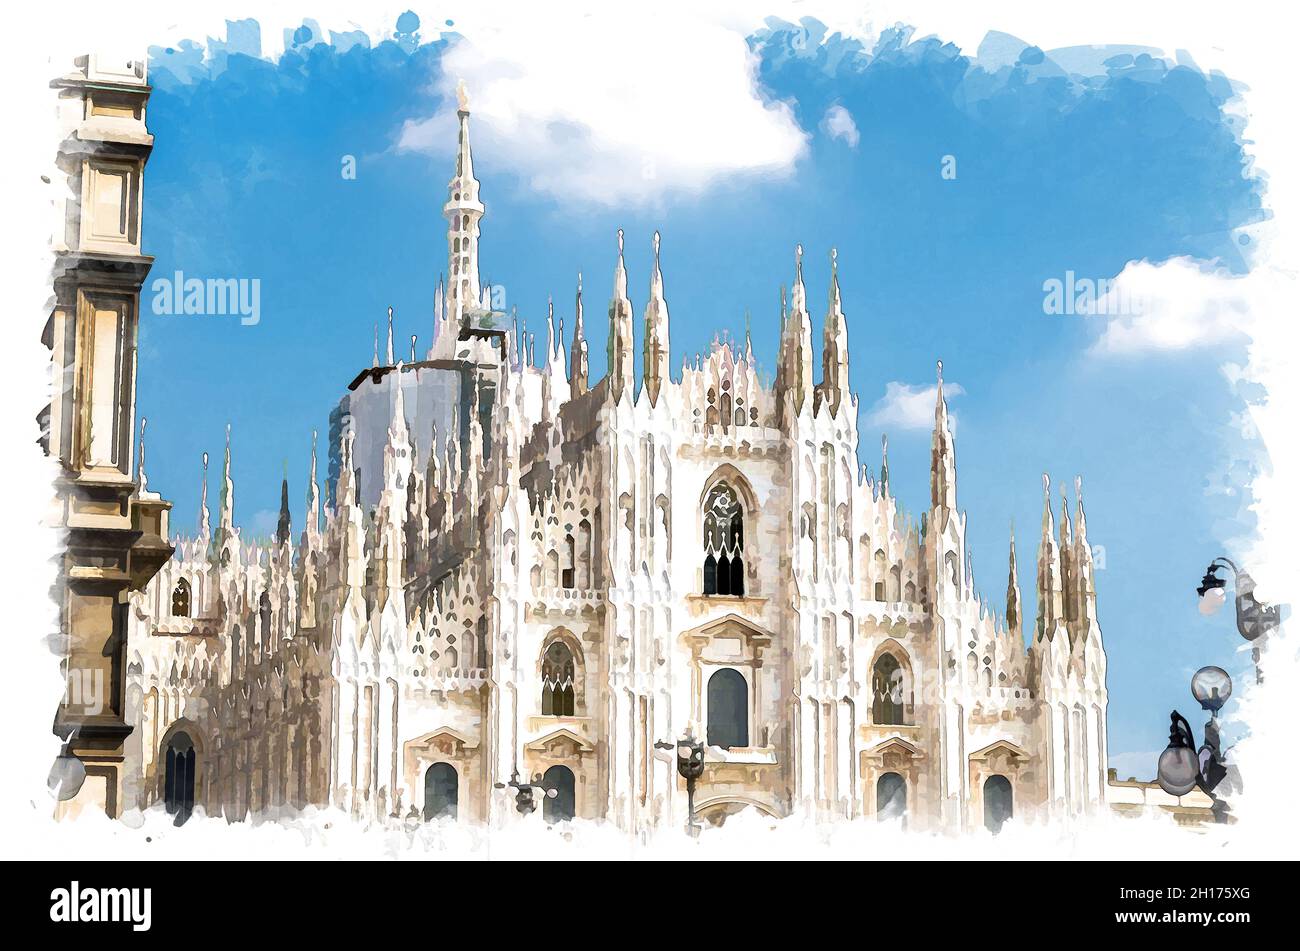 Aquarell-Zeichnung der Duomo di Milano Kathedrale Fassade mit weißen Wänden, Türmen, Stuckarbeiten und Stuckarbeiten auf der Piazza del Duomo Platz, blauer Himmel hintergr Stockfoto